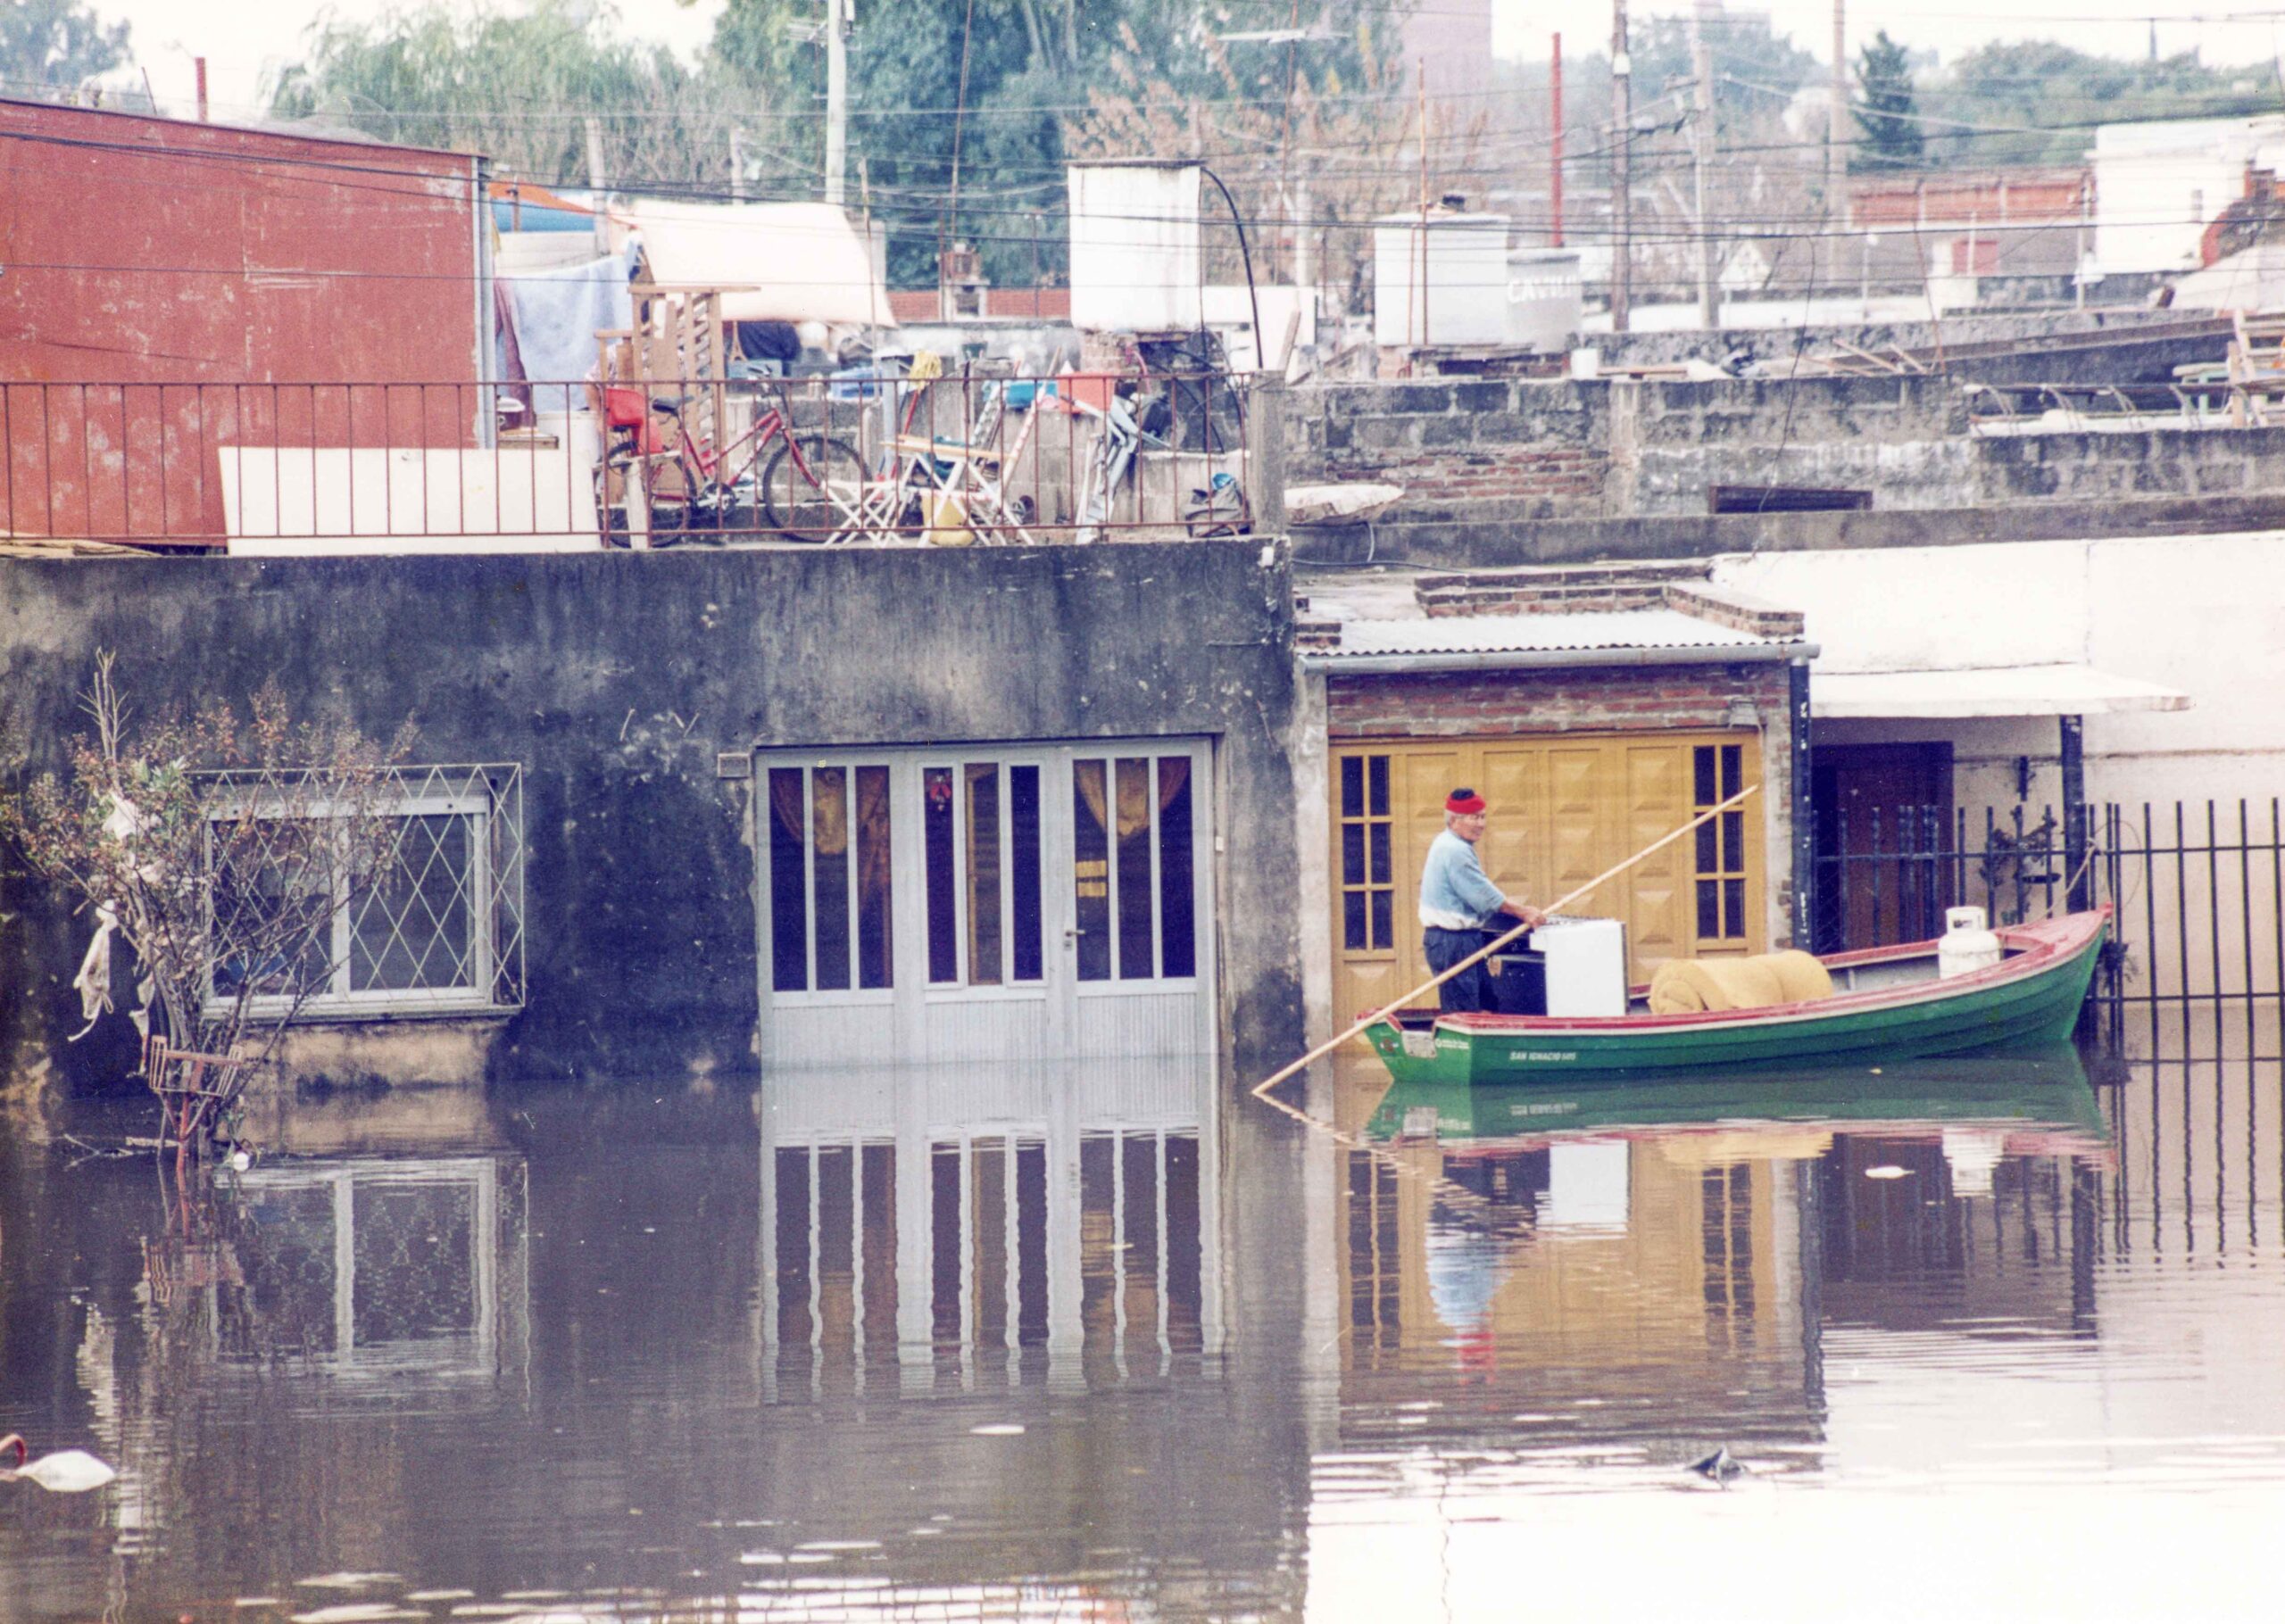 Hombre sobre una canoa recorriendo el barrio Chalet, llevando una garrafa, un electrodoméstico y un colchón enrollado